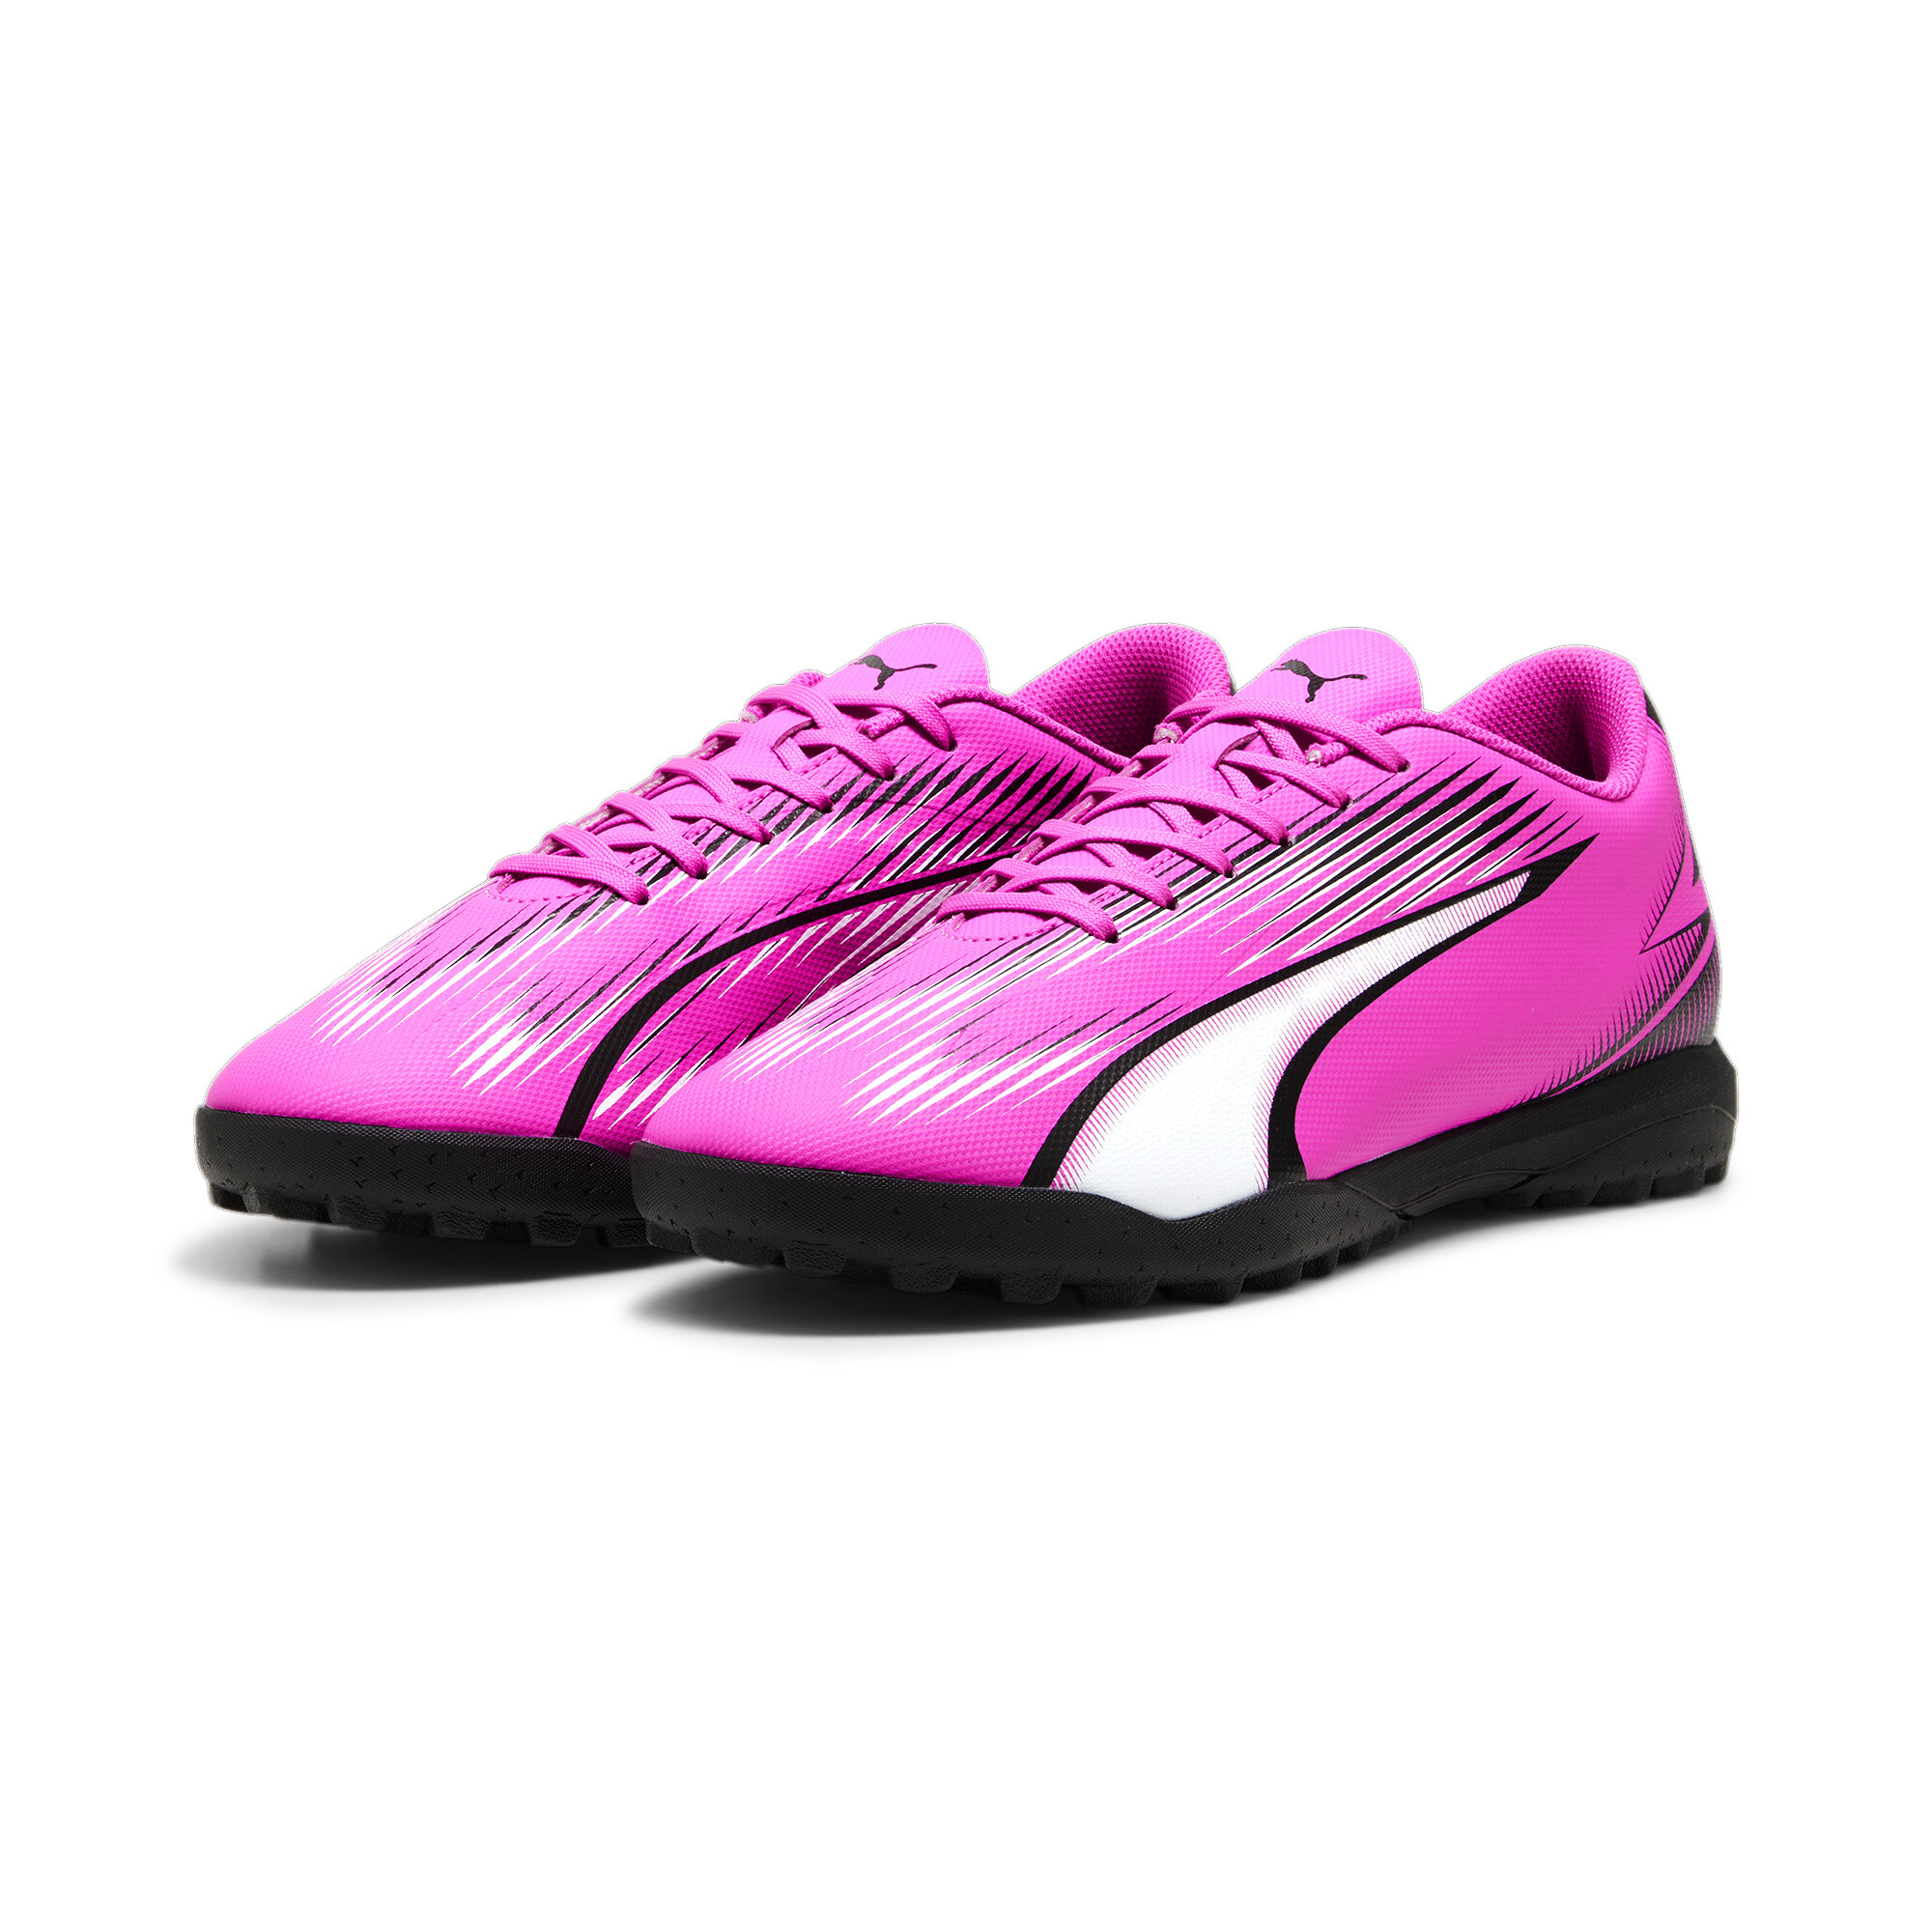 Men's PUMA ULTRA PLAY TT Football Boots In Pink, Size EU 42.5